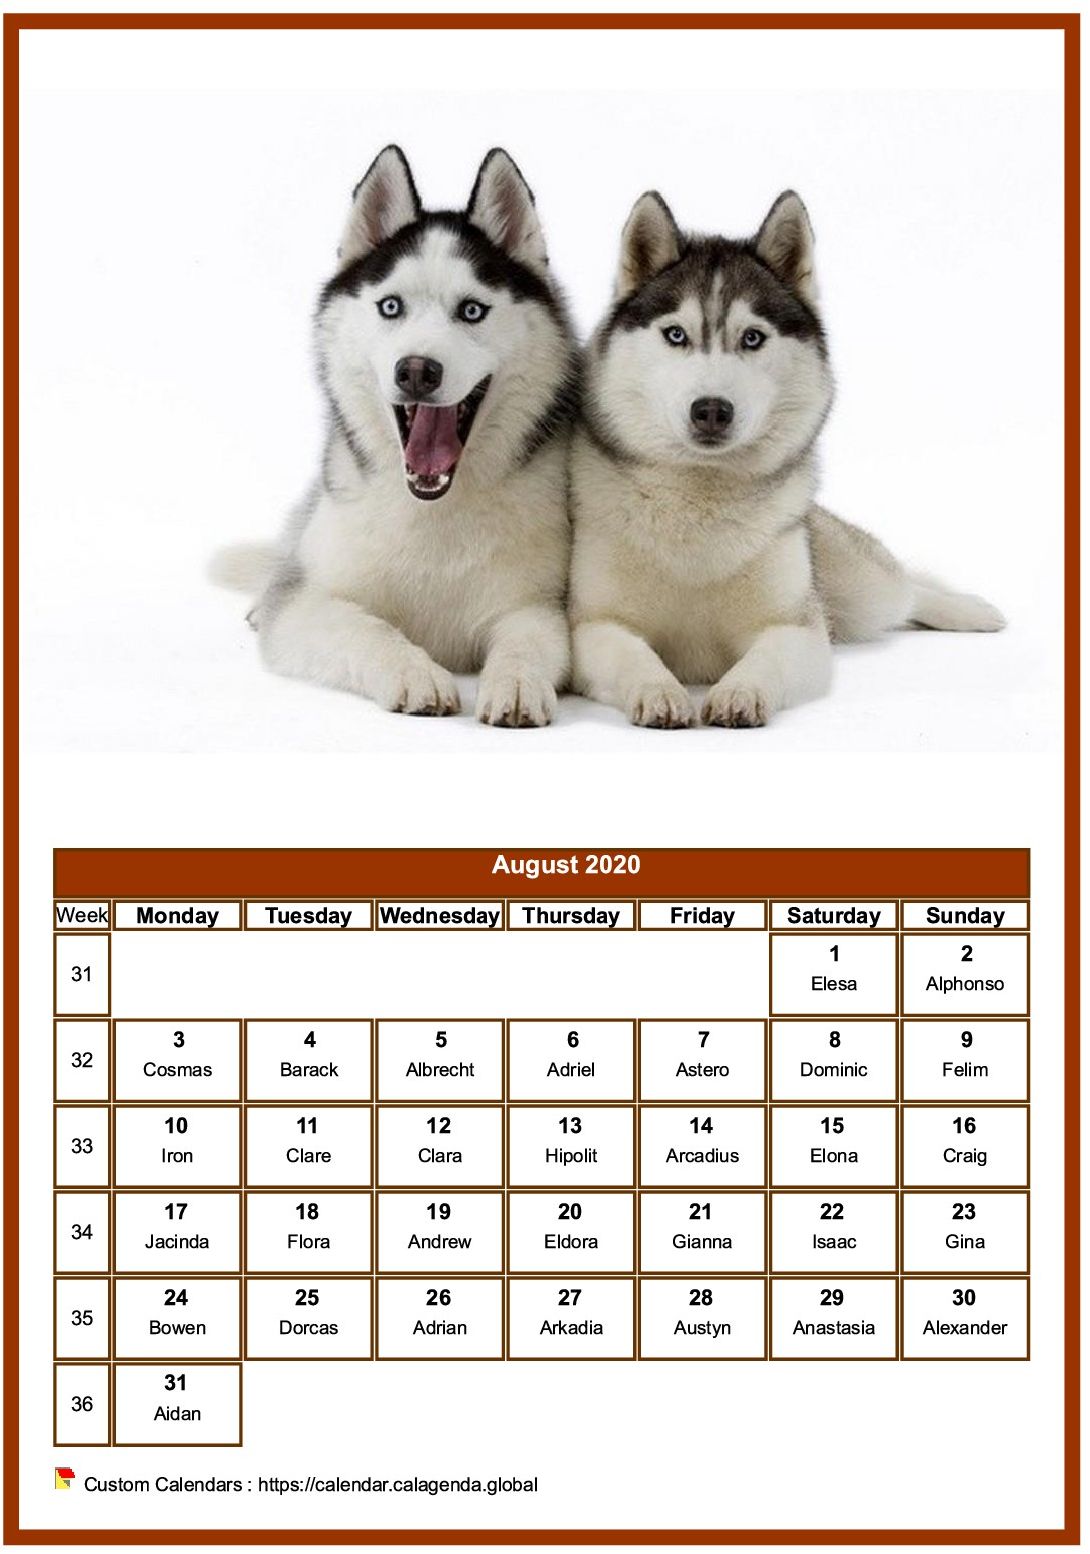 Calendar August 2020 dogs